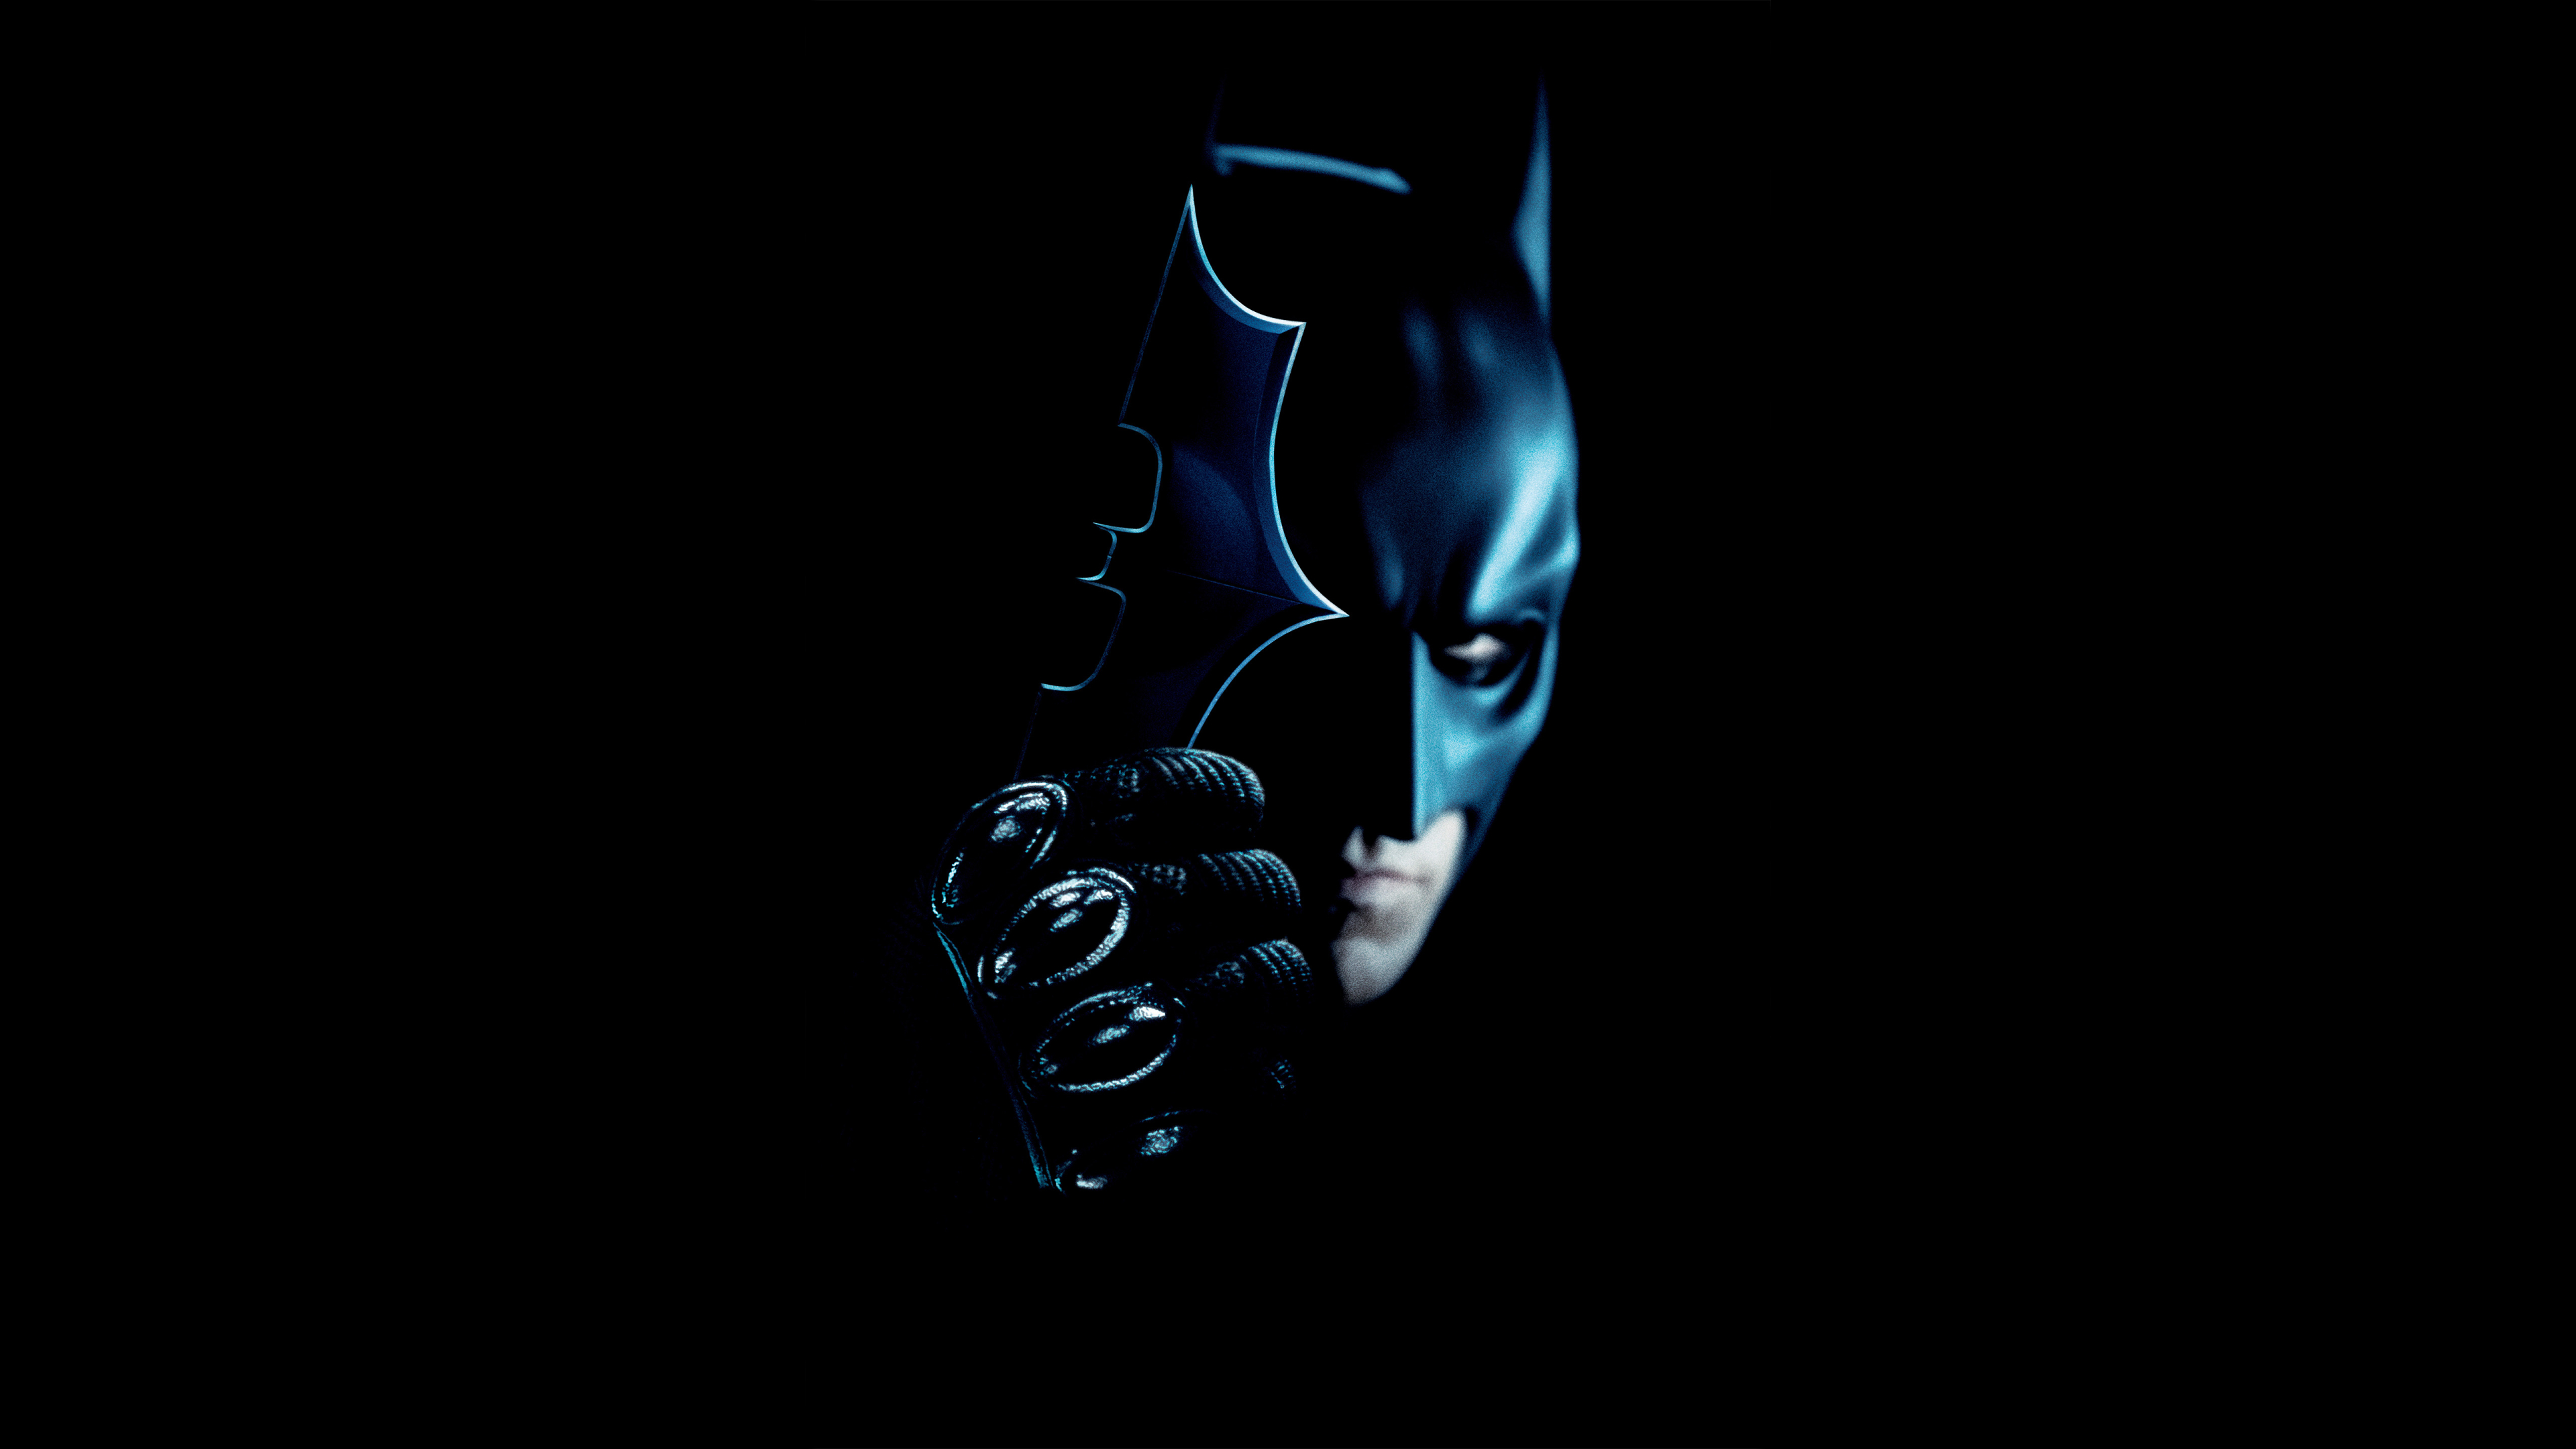 3840X2160 Resolution Batman The Dark Knight 4K Wallpaper - Wallpapers Den